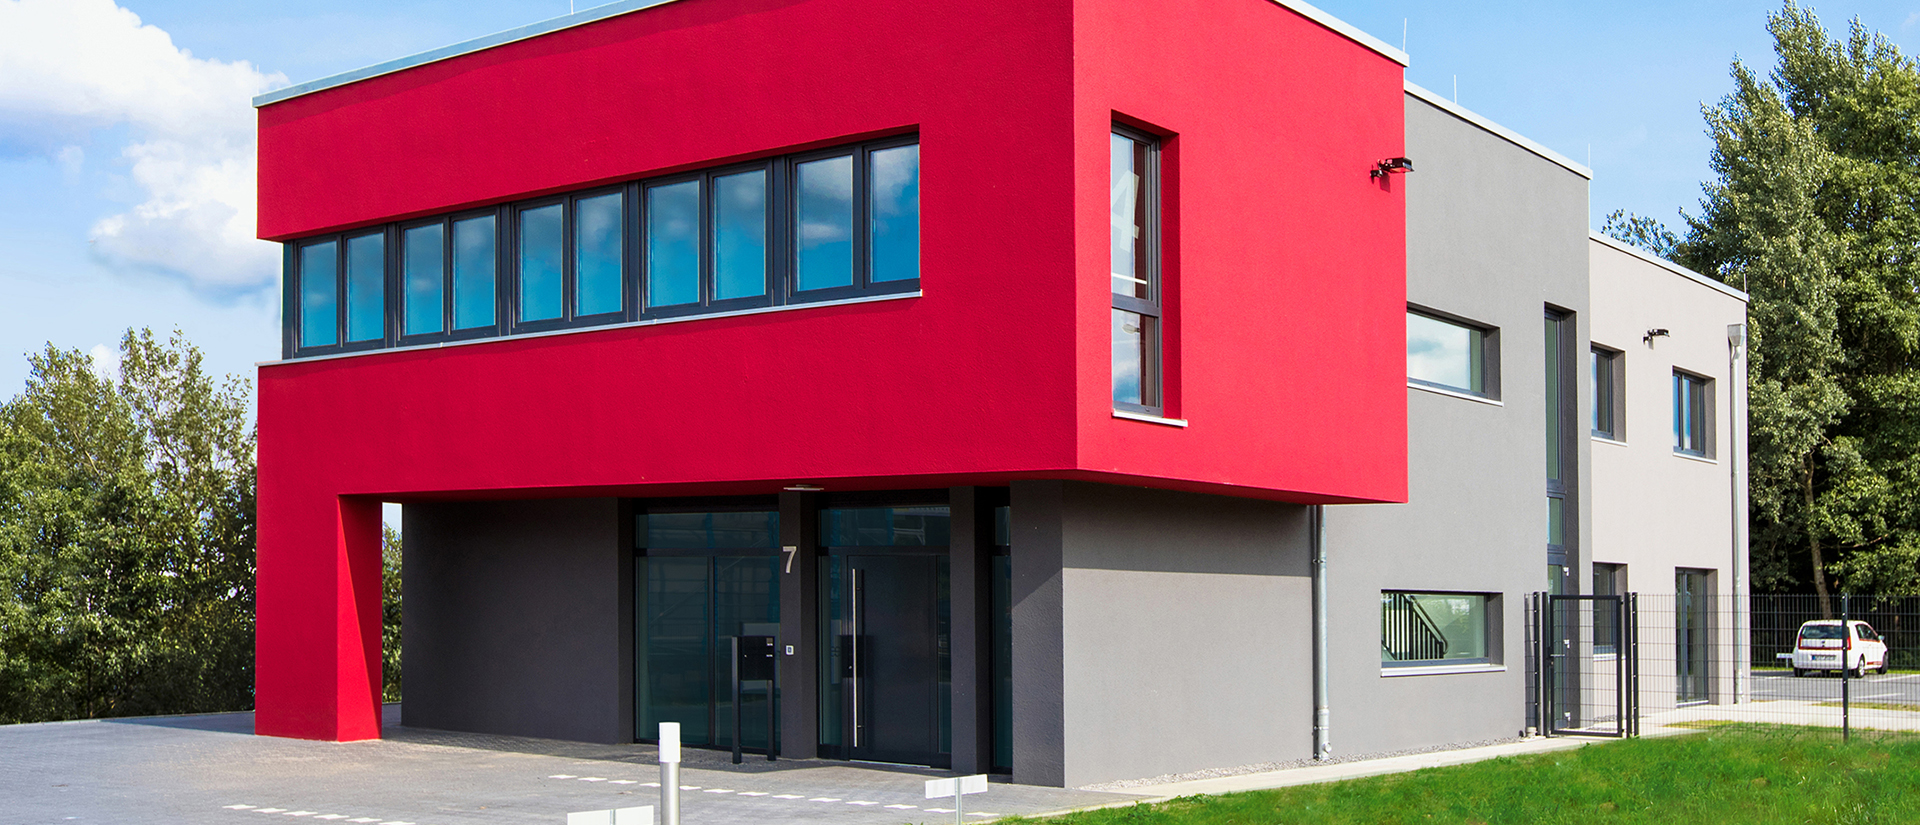 Herkenhoff Referenzen anthrazitfarbene Haustür und Fenster im rot-grauen Firmengebäude